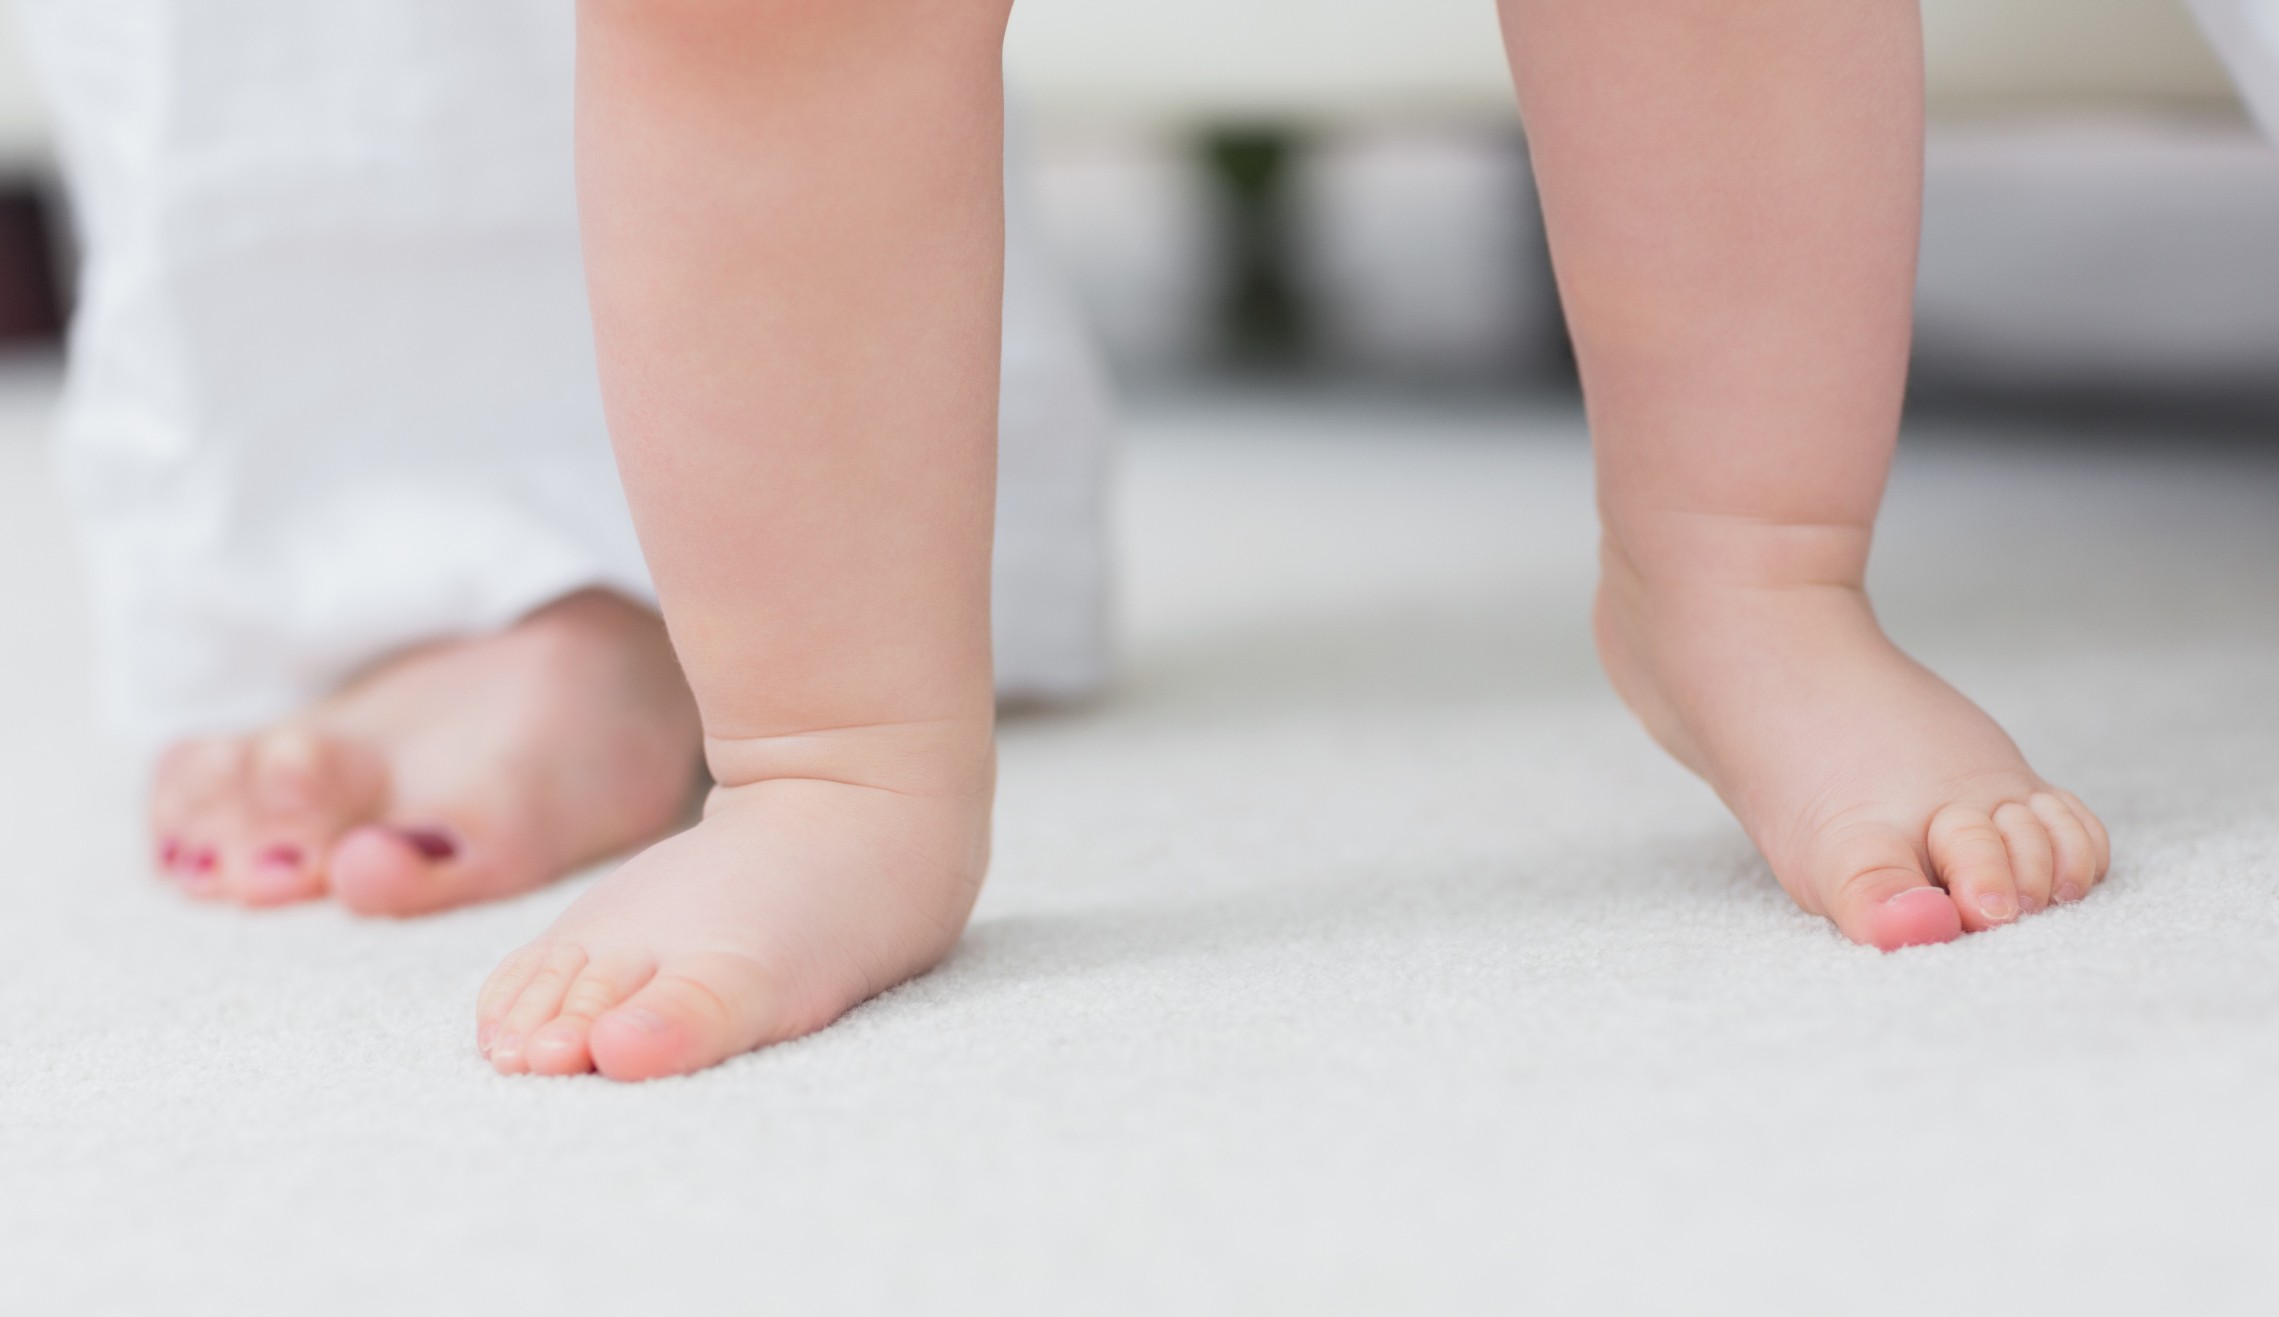 5 dicas para proteger o bebê que está começando a andar (Foto: ThinkStock)